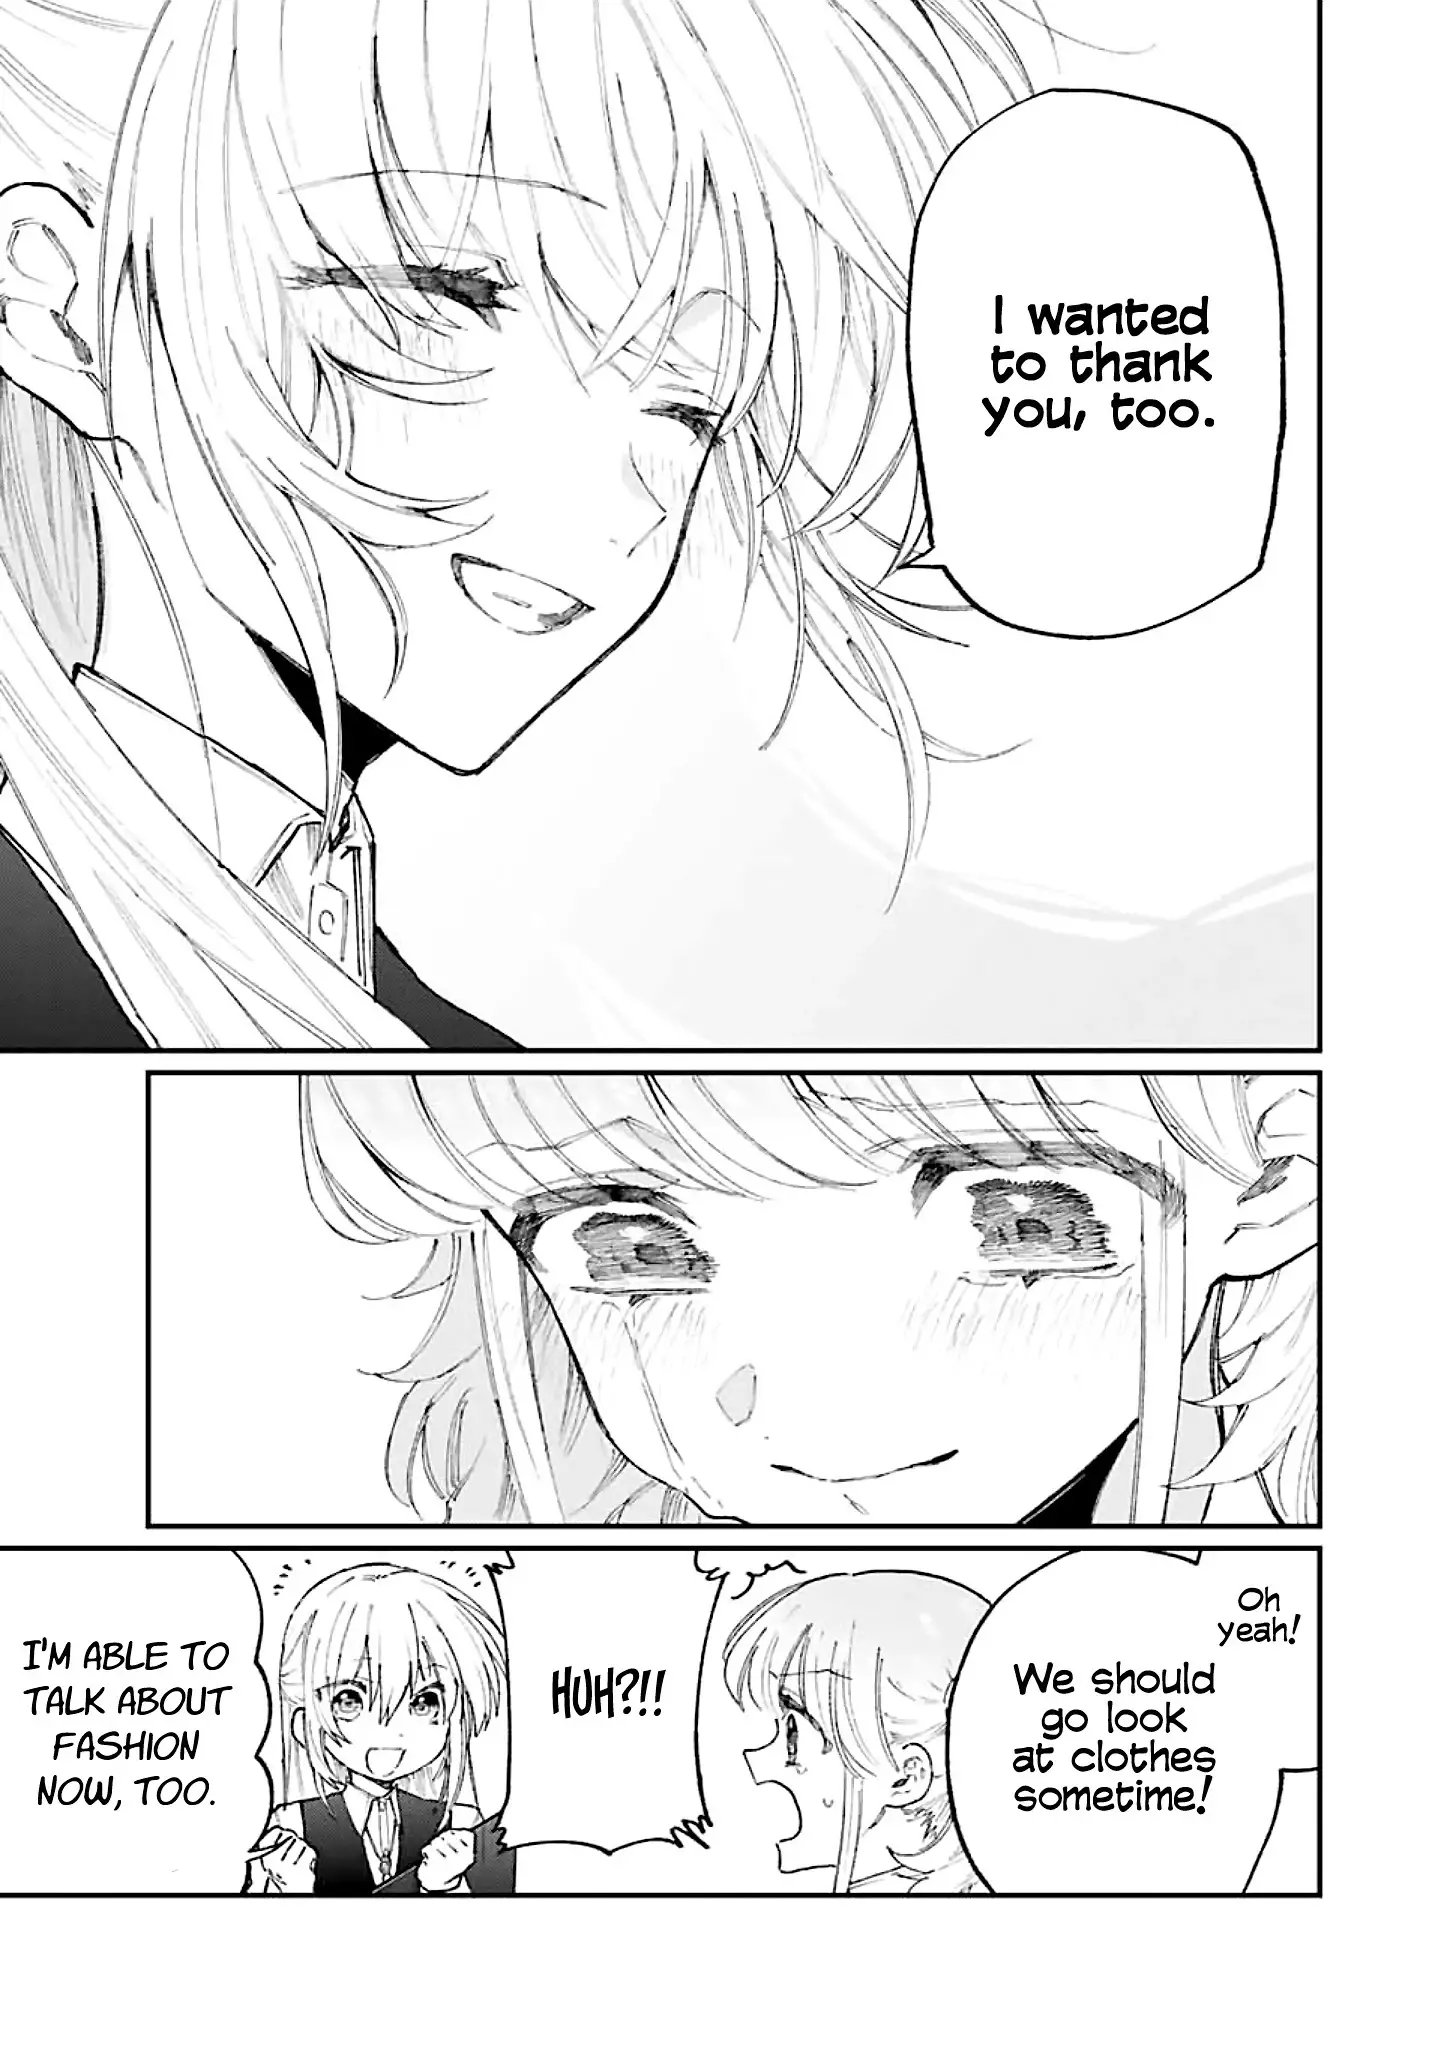 Shikimori's Not Just A Cutie - 133 page 14